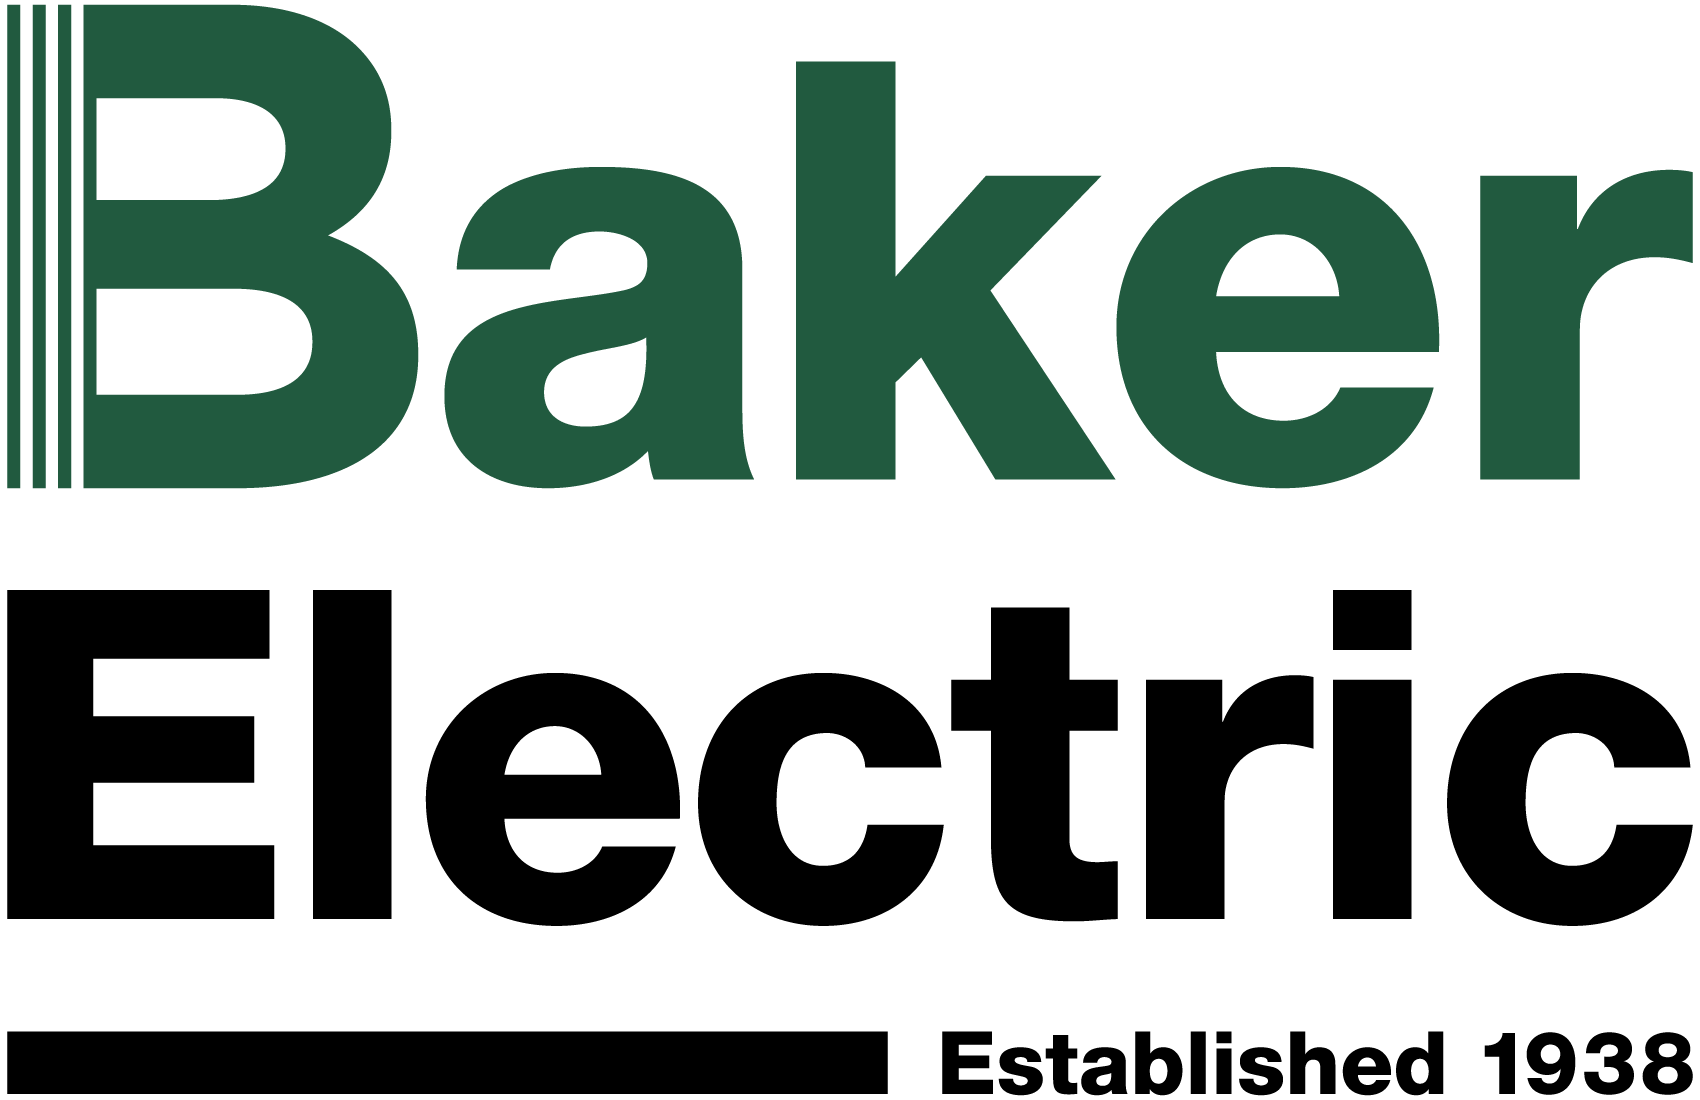 baker-logo-no-icon-640